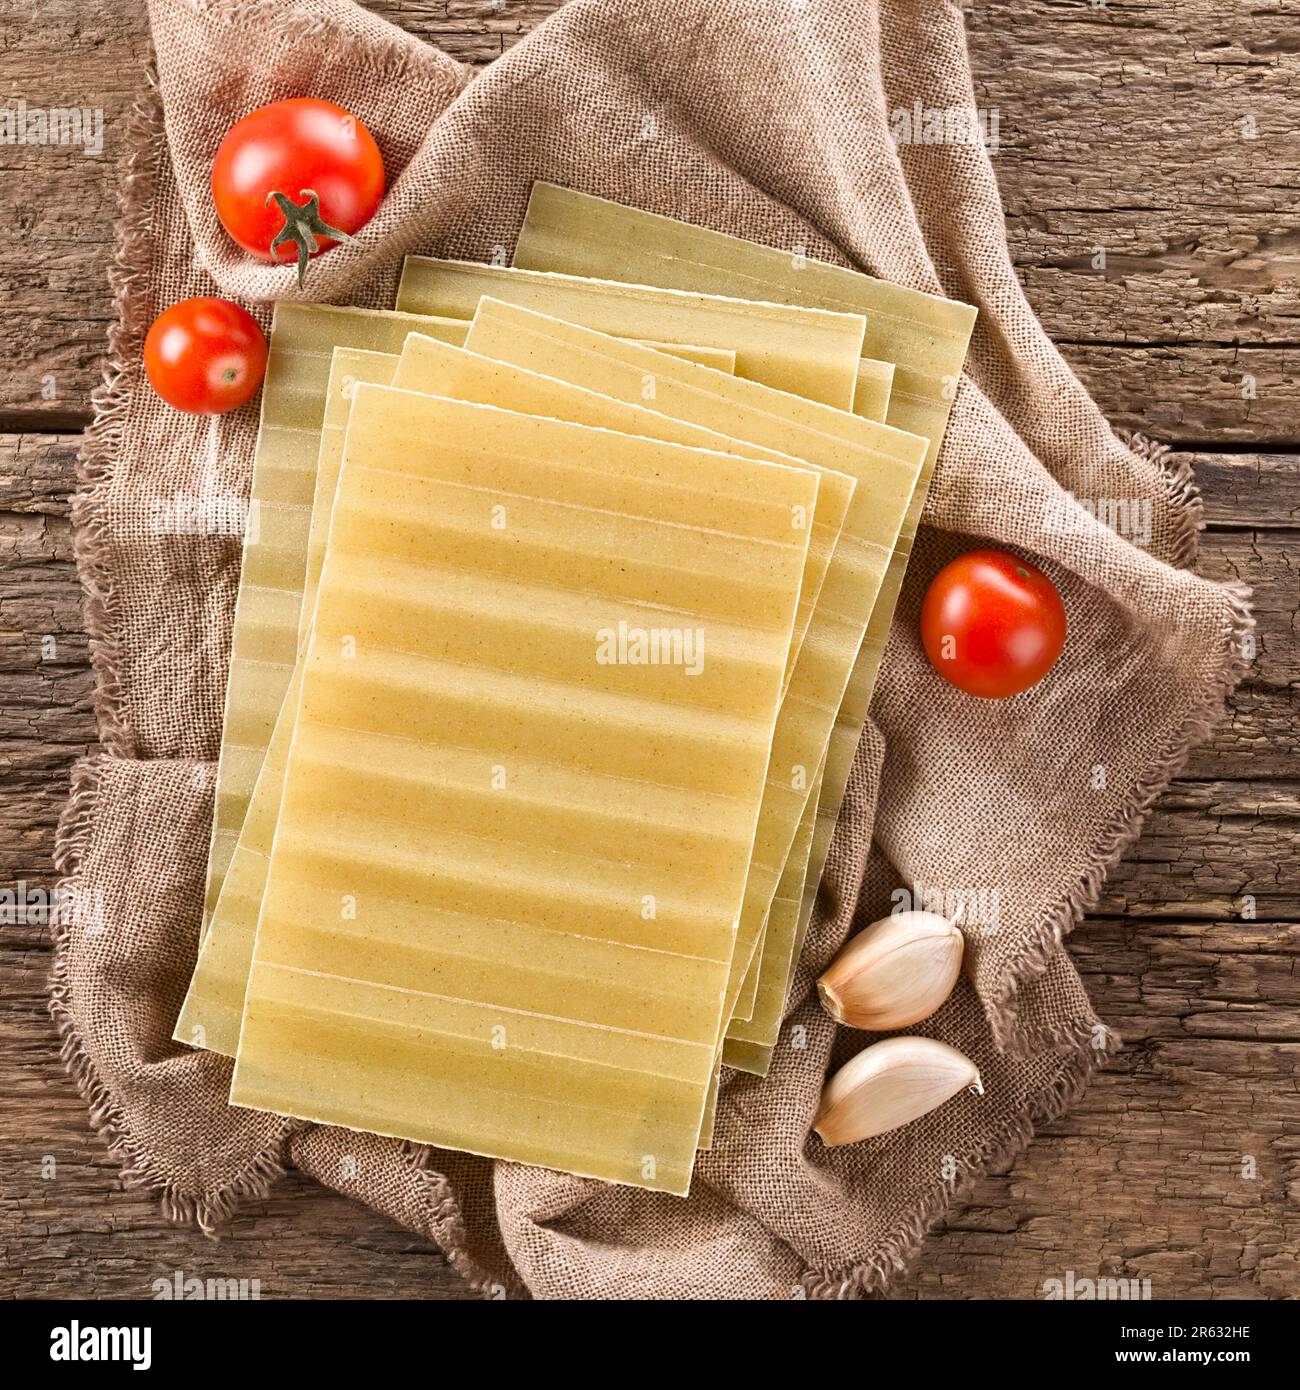 Sfoglia di lasagne rigate a secco, non cotte, fotografata sopra su legno rustico Foto Stock